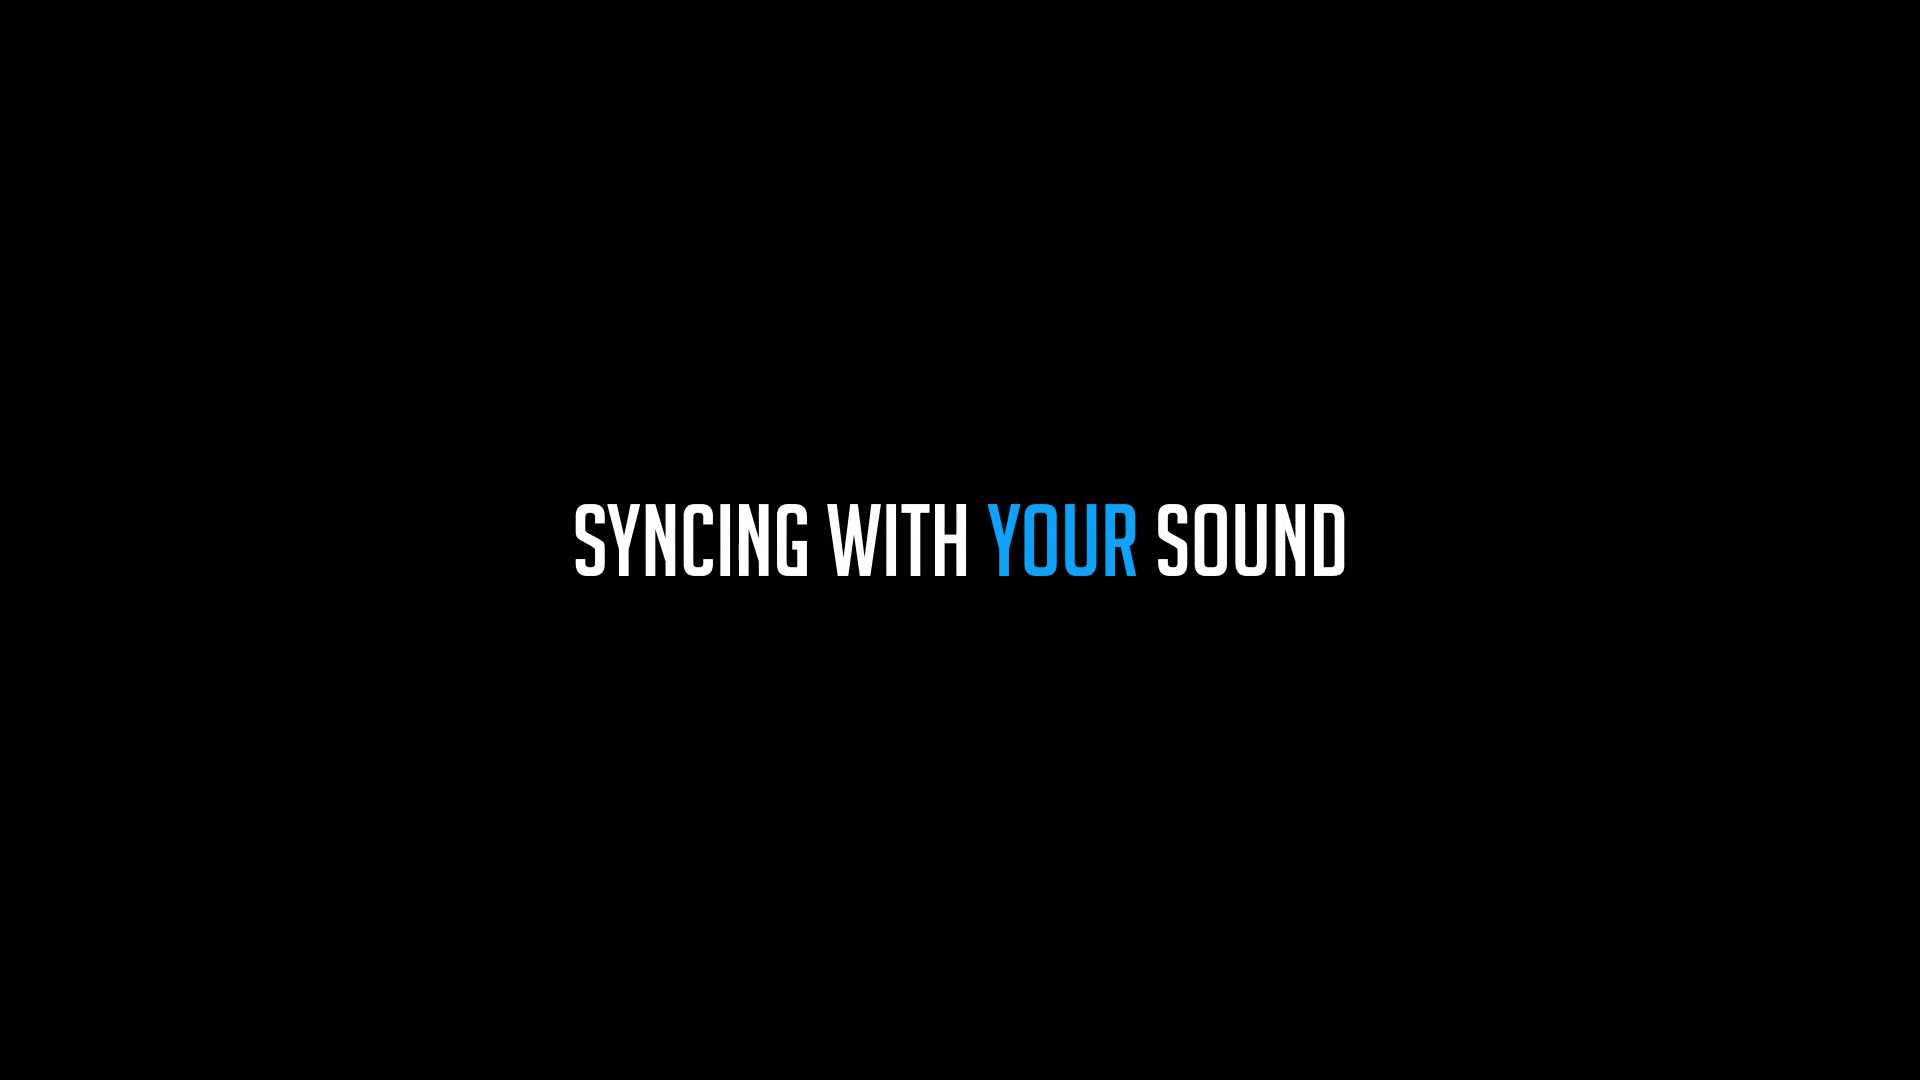 Sound Glitch Logo Reveal Videohive 21950743 Premiere Pro Image 2